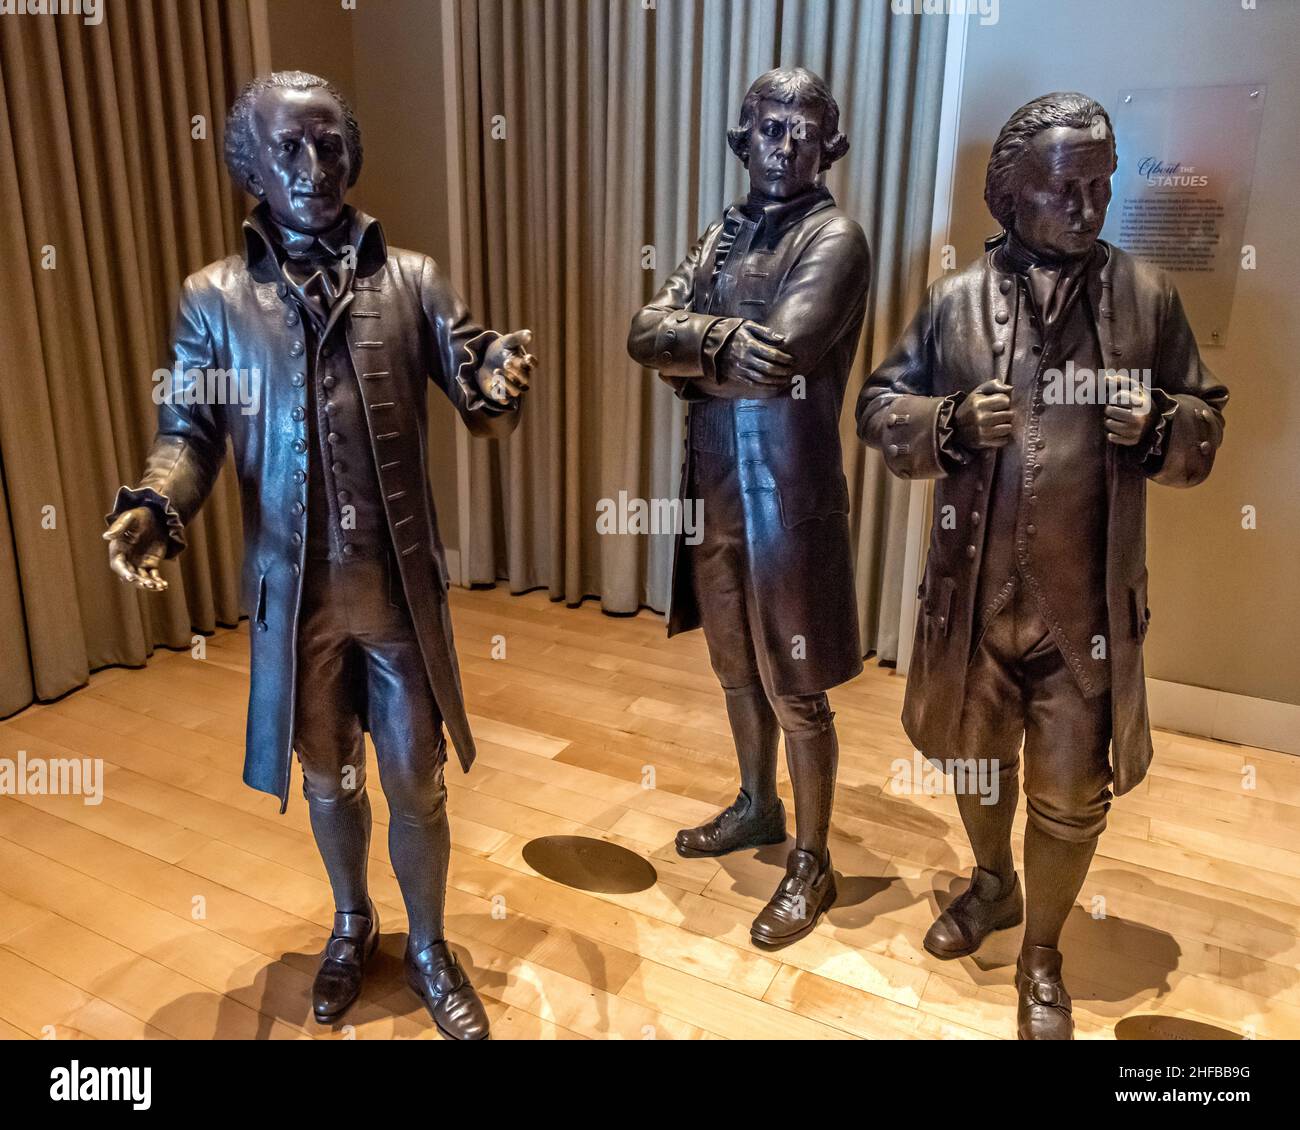 Las estatuas de bronce de (L a R) Elbridge Gerry, Edmund Randolph y George Mason en el salón de los firmantes en el Centro Nacional de la Constitución de Filadelfia Foto de stock